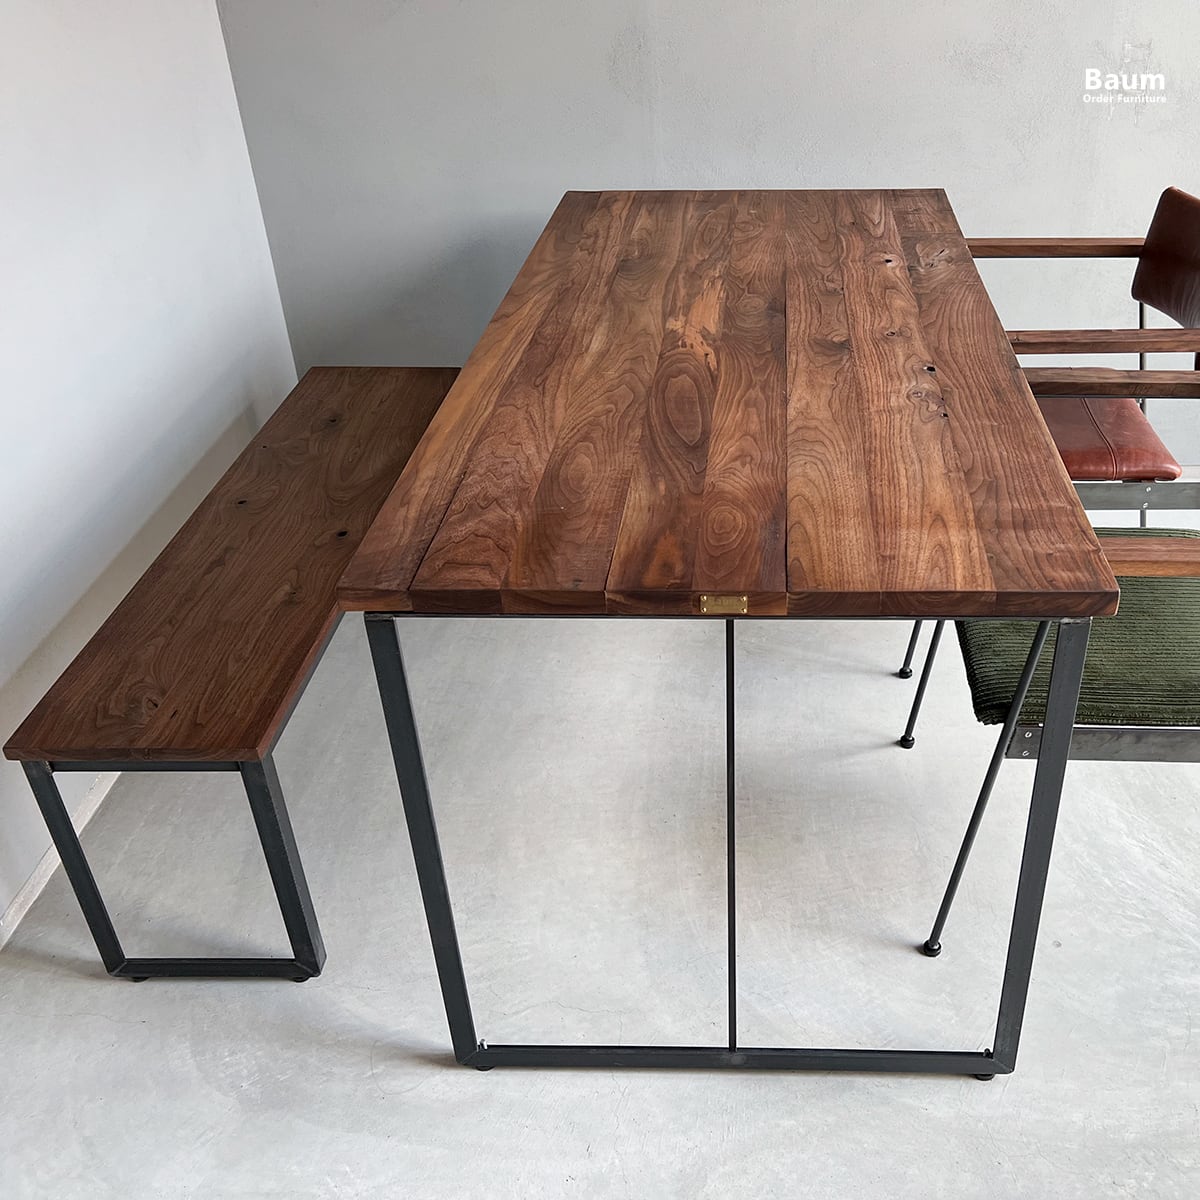 テーブル天板 足場板 古材 カフェ用天板 サイズ変更可能-